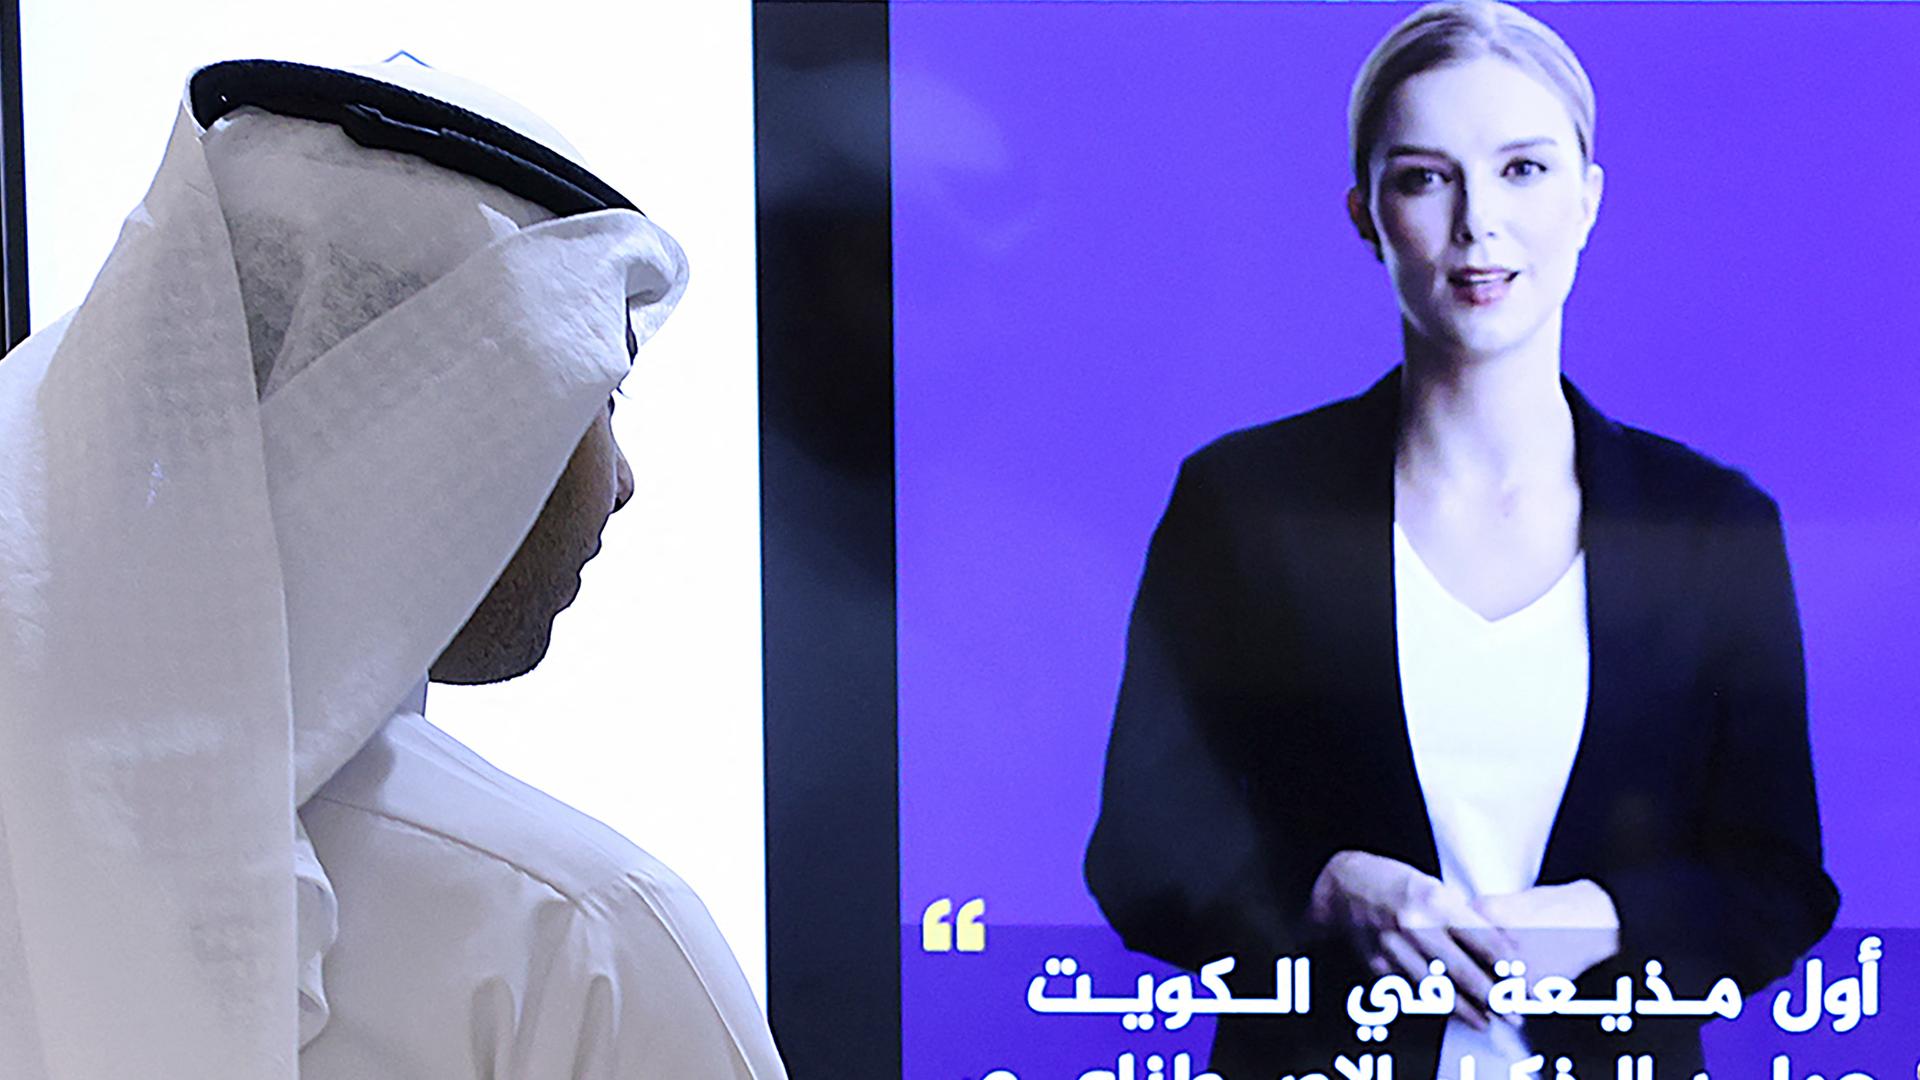 Ein Journalist sieht sich das Präsentationsvideo an, dass die virtuelle Moderatorin "Fedha" zeigt.